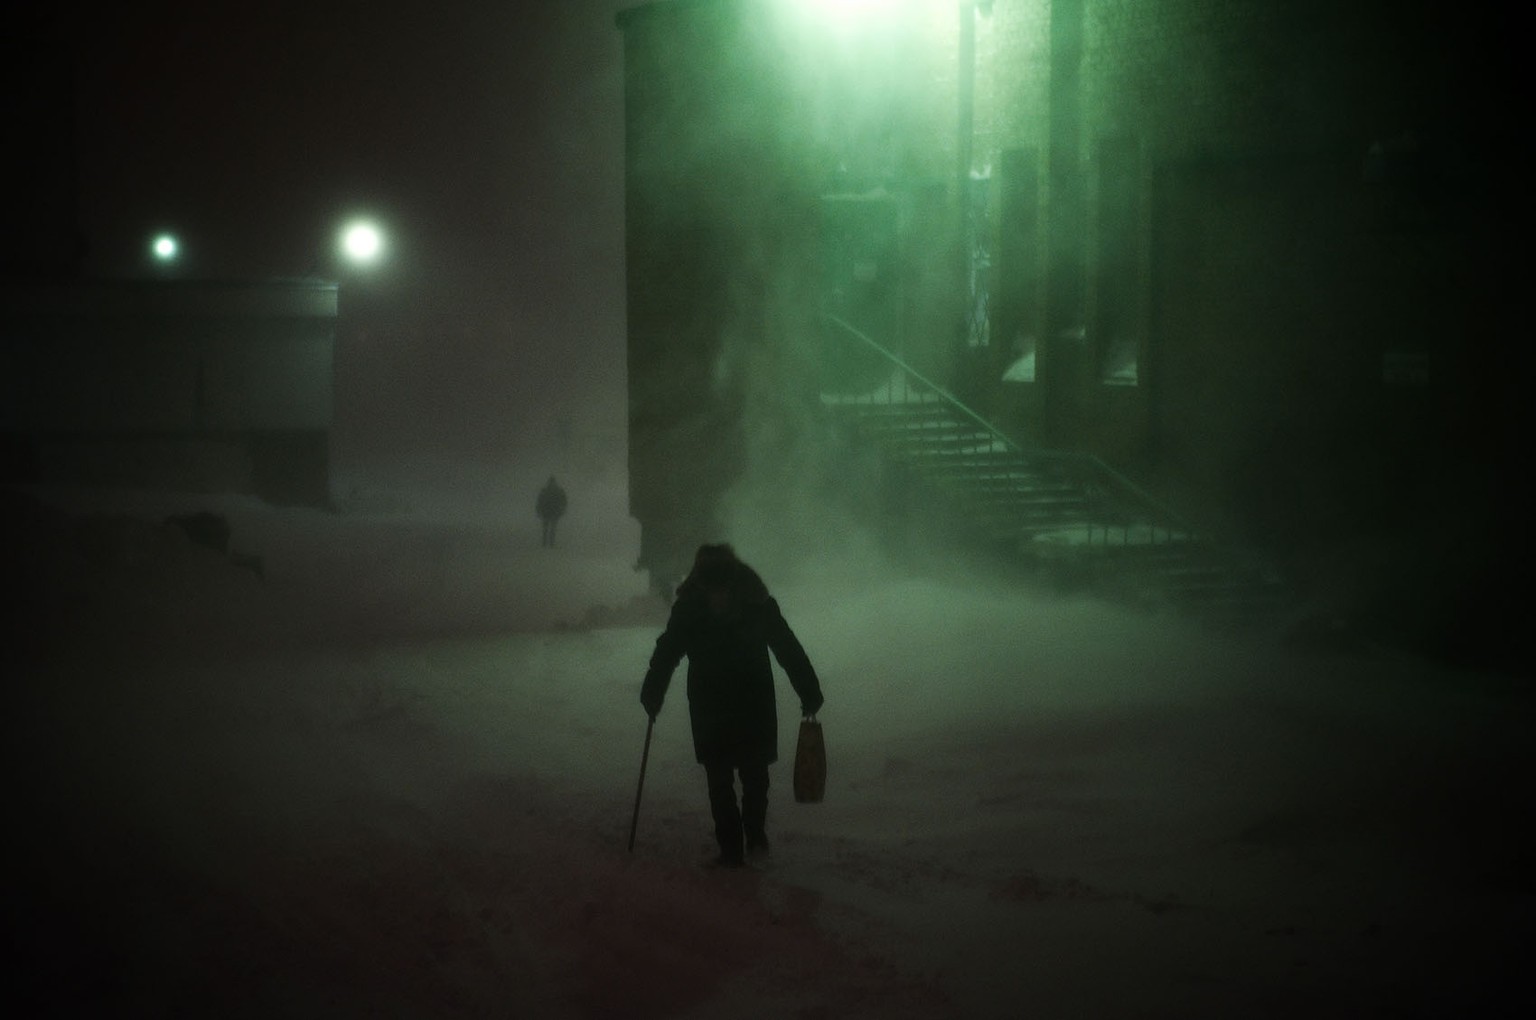 Les hivers à Norilsk sont longs et froids, avec une température moyenne d&#039;environ -31 ° C en janvier. Il en résulte de nombreux jours de gel, couplés avec des vents forts et violents. La période  ...